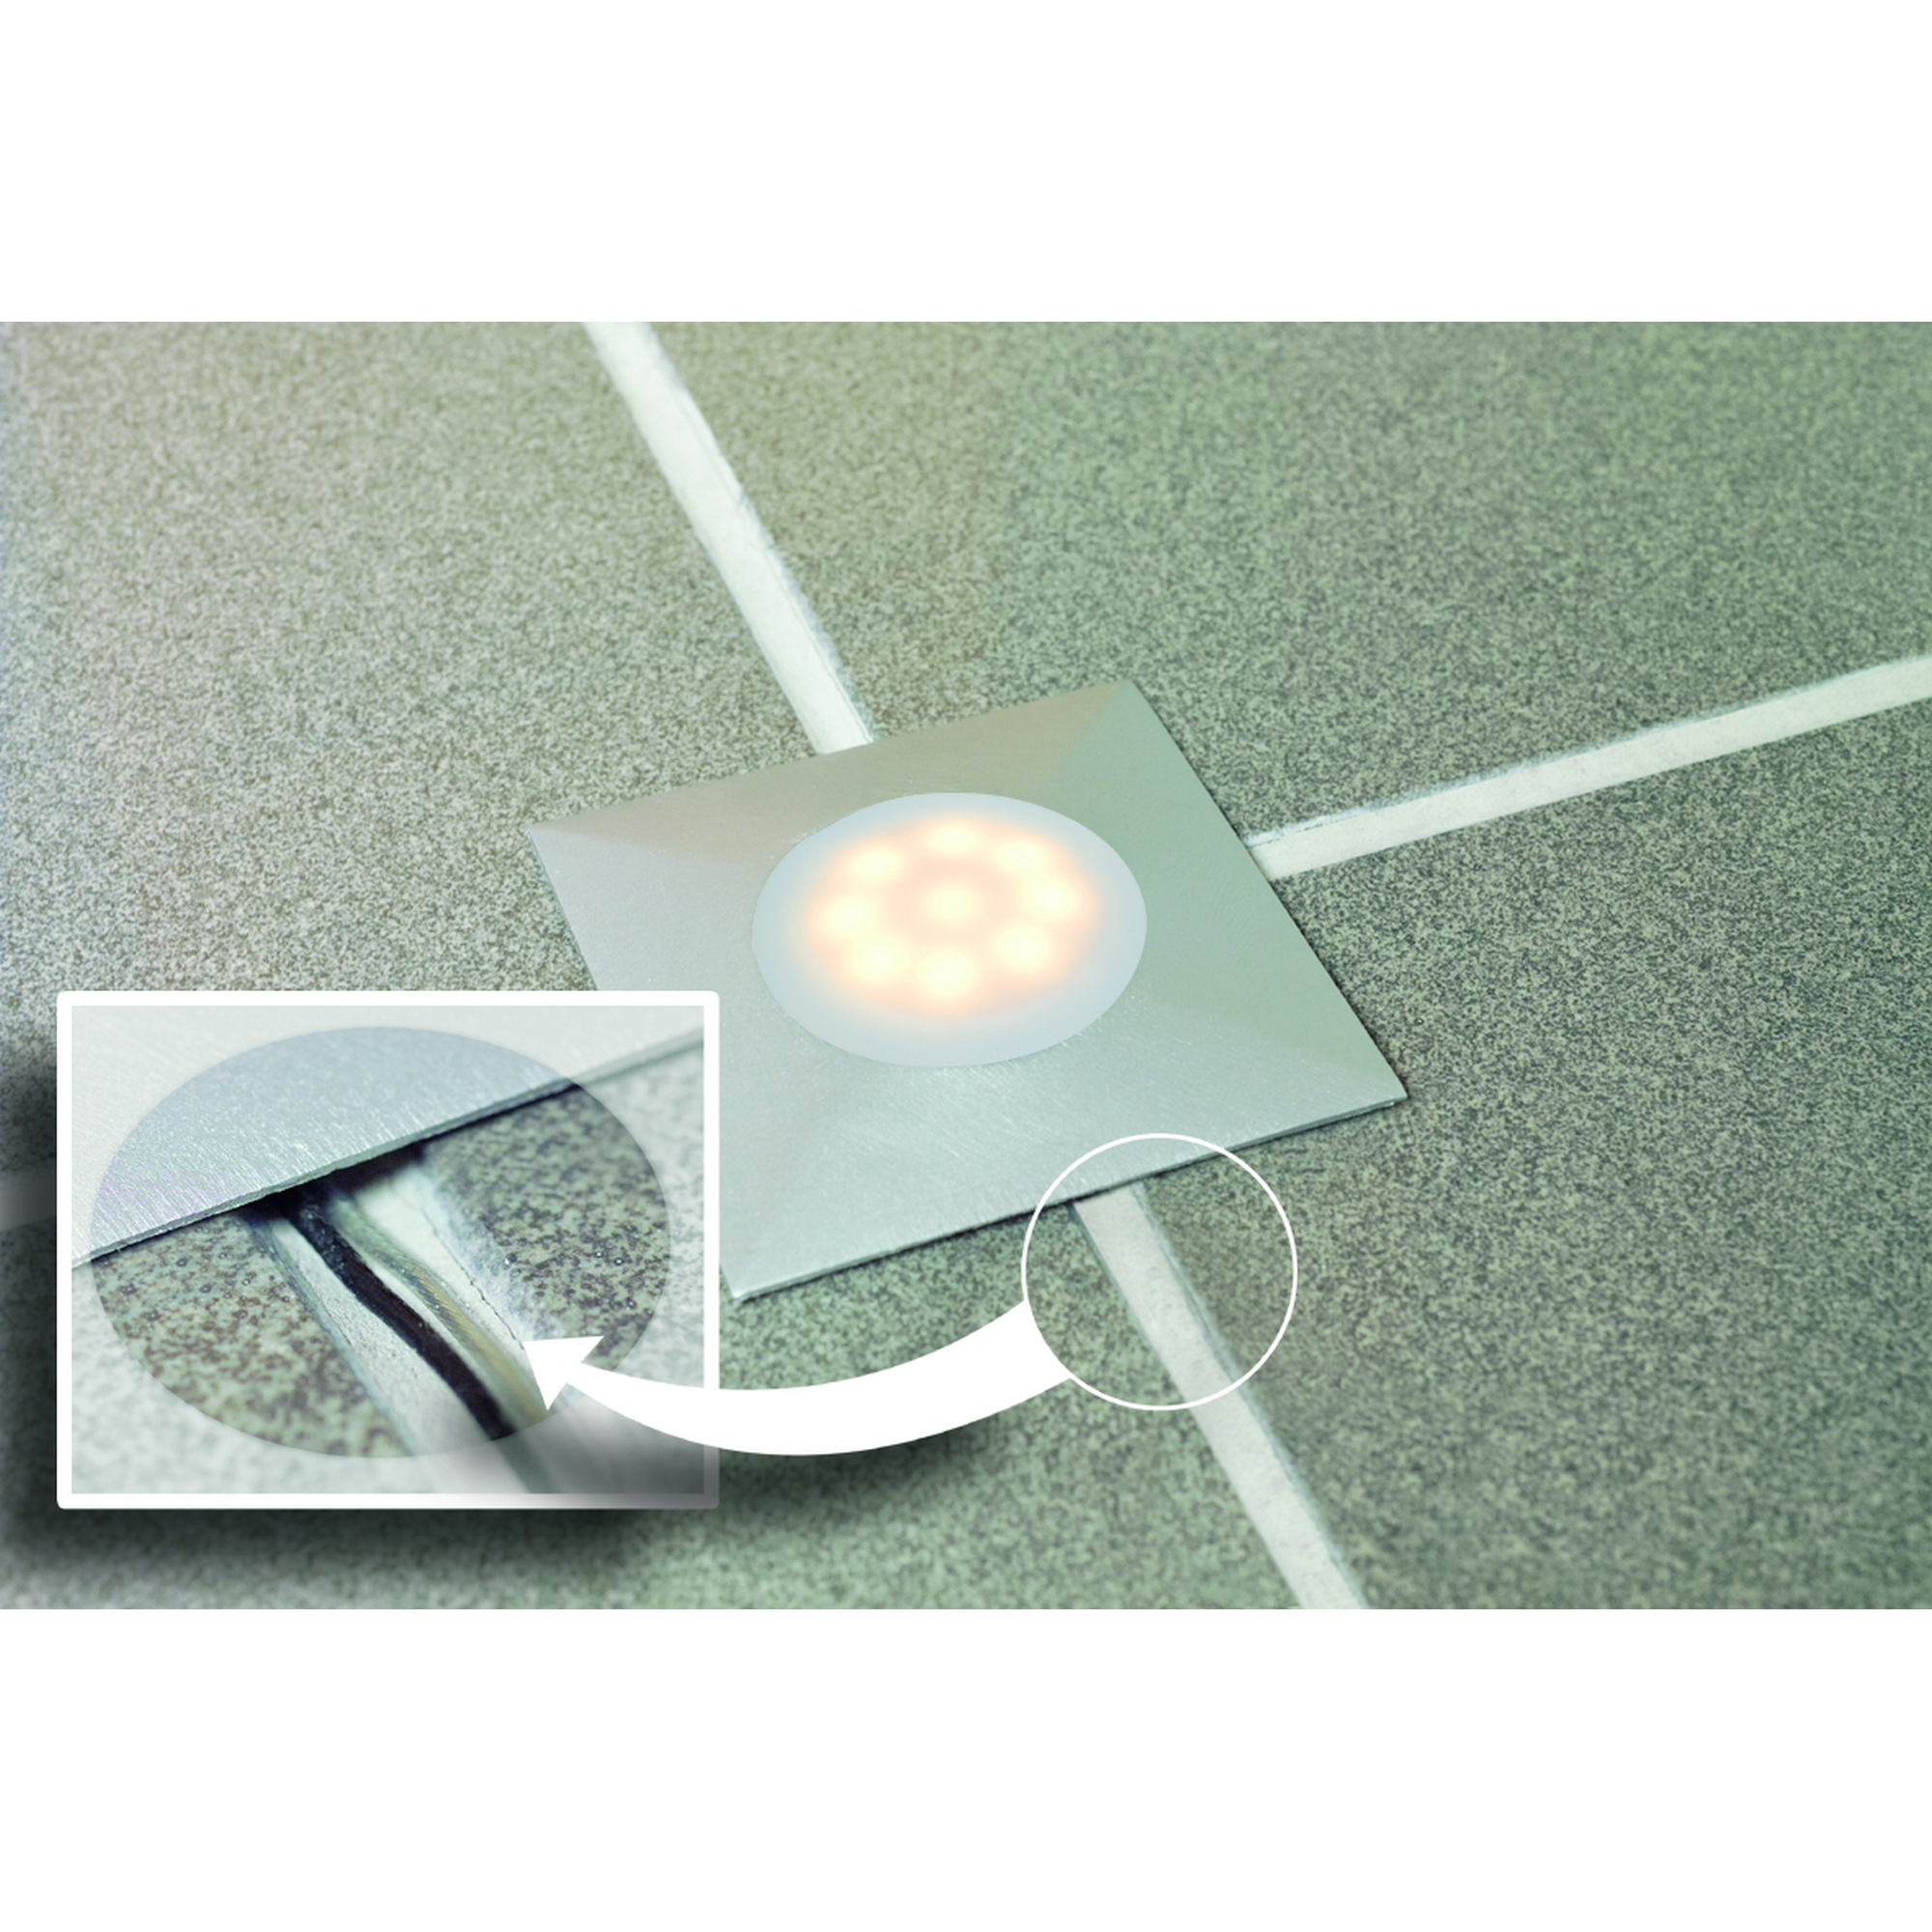 LED-Einbauleuchte 'UpDownlight' Ø 45 mm 3000 K warmweiß 1 W satin, 1 Stück + product picture